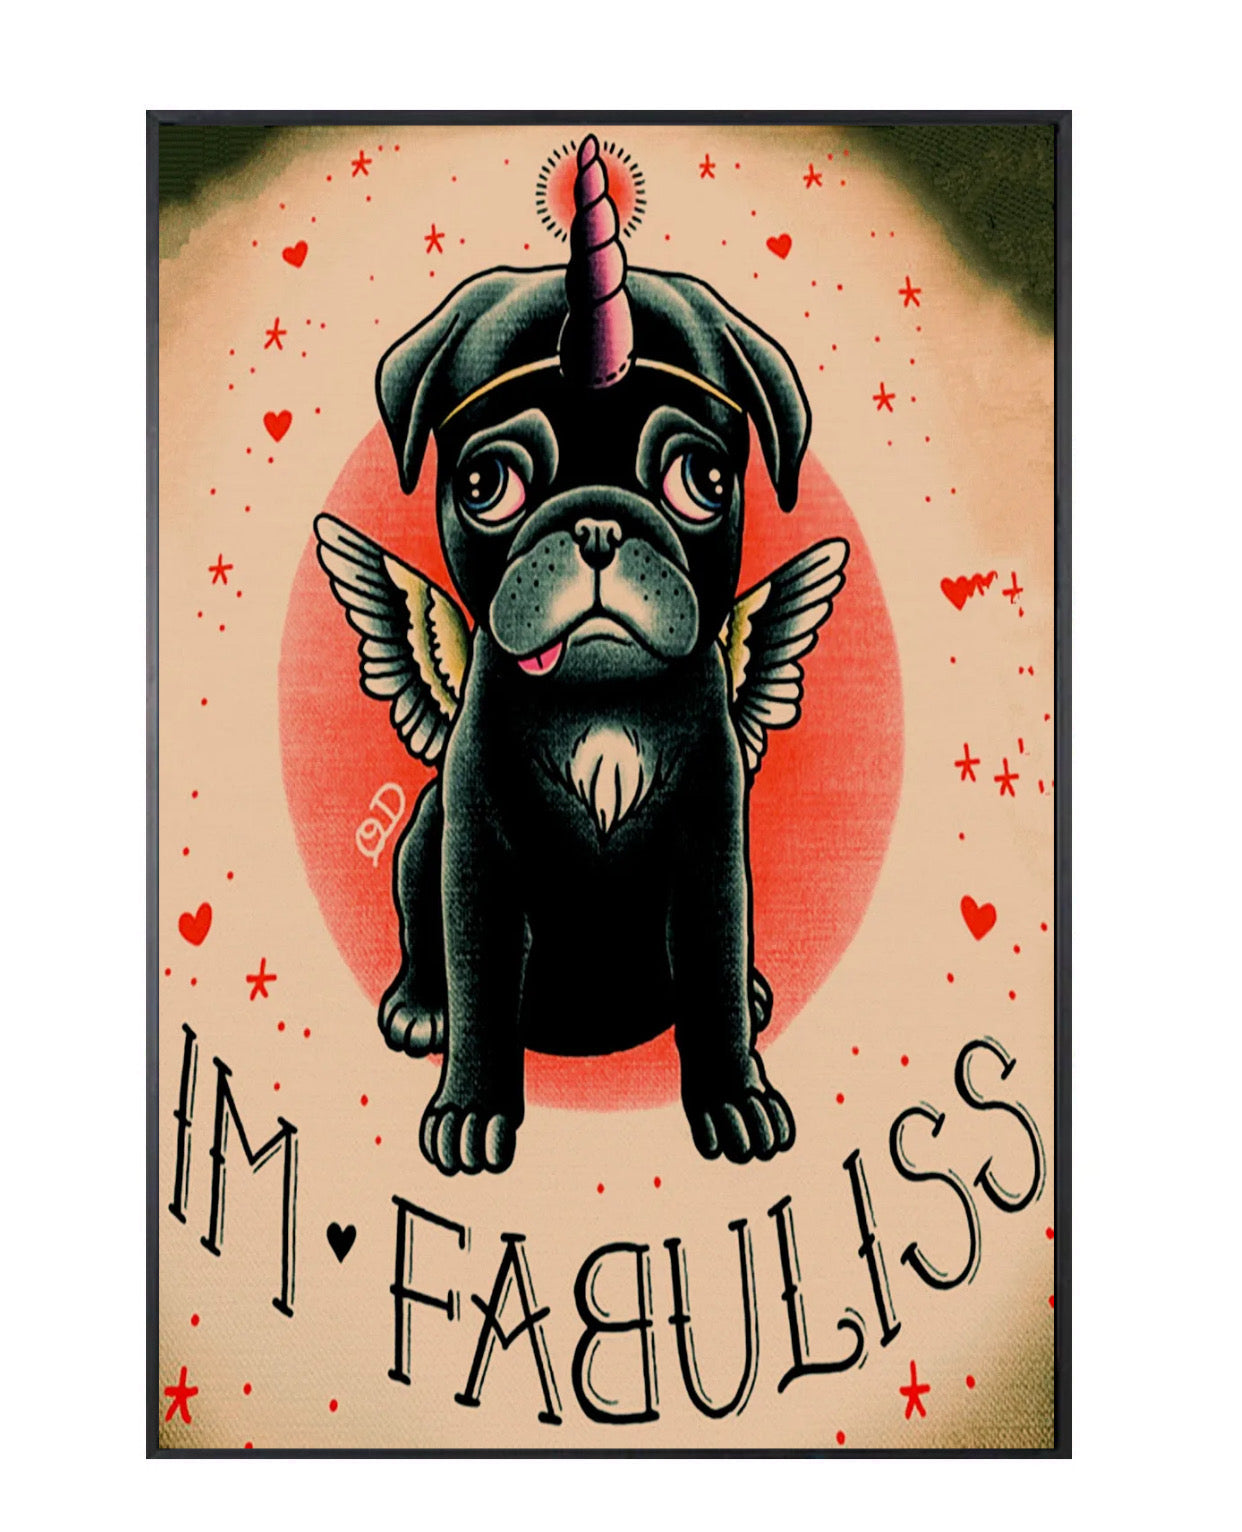 "im-fabuliss" tattoo poster